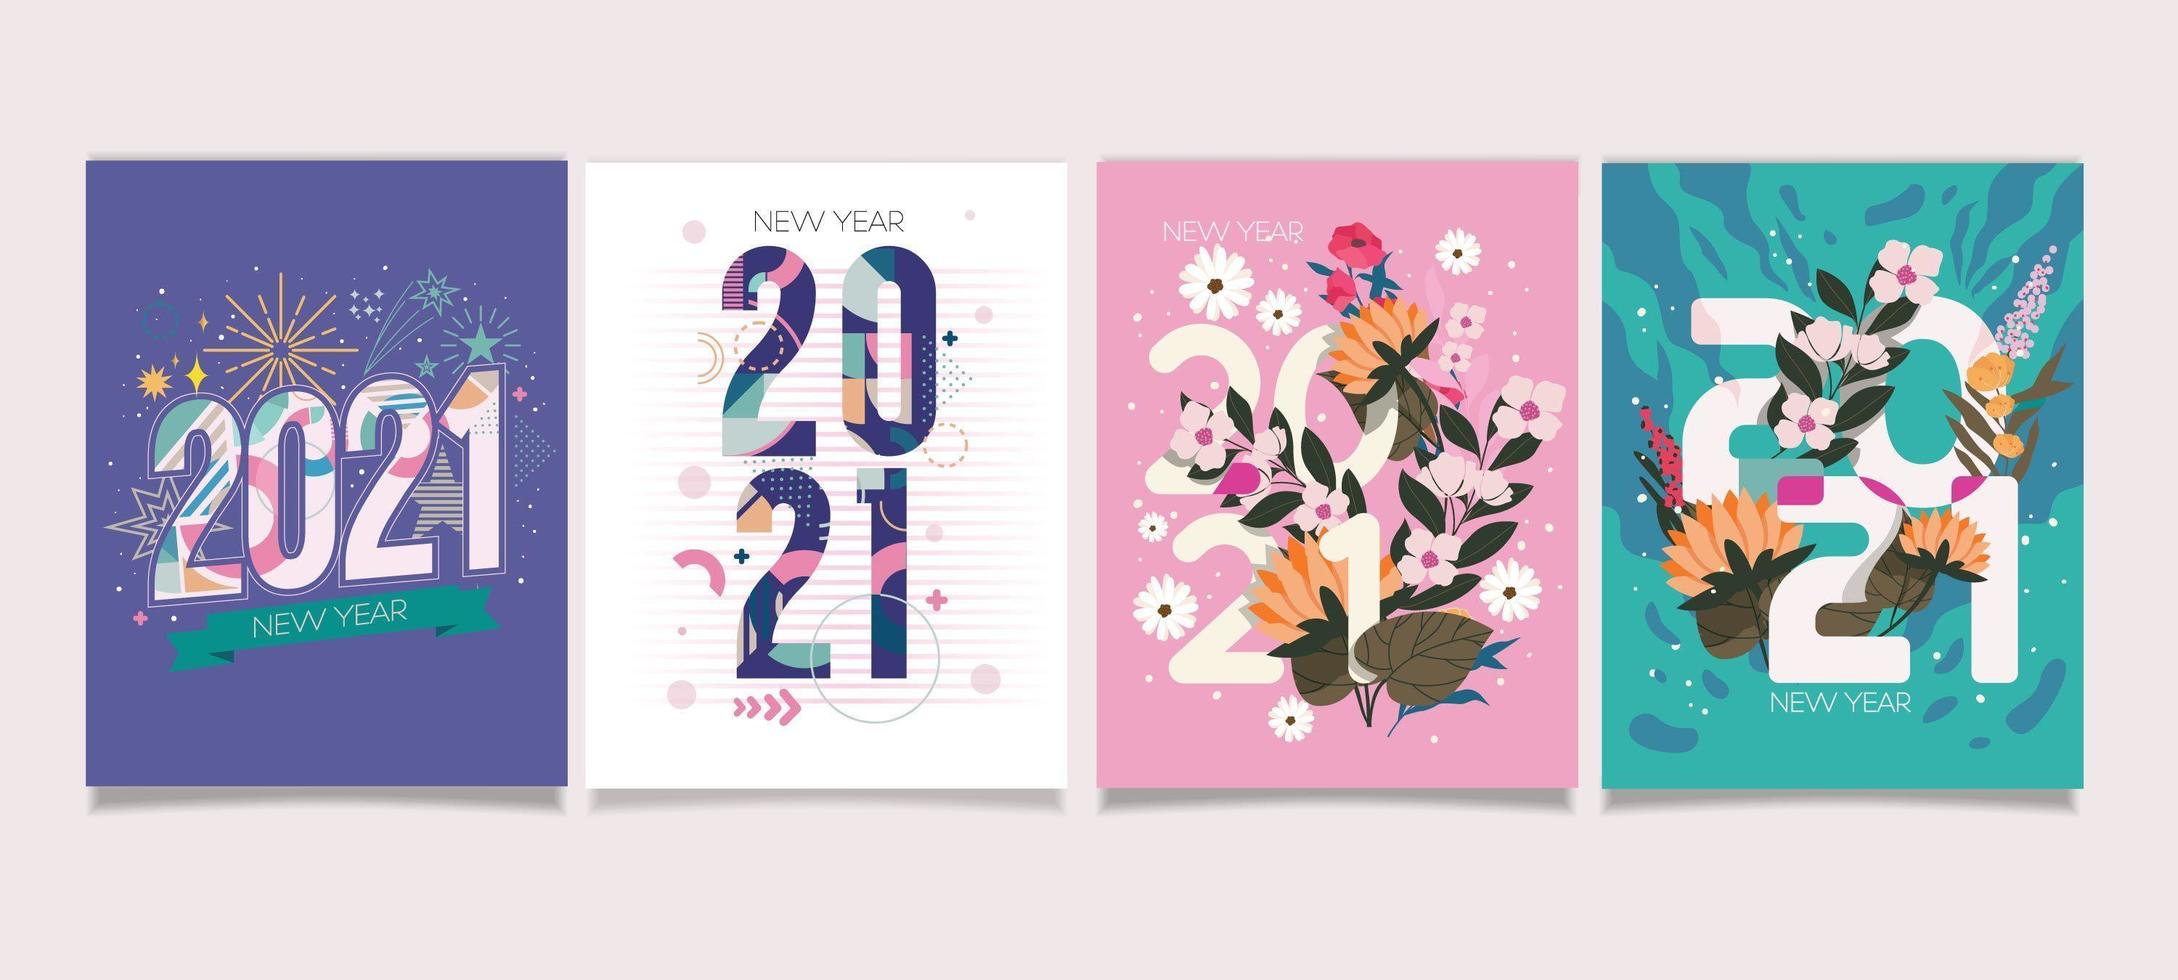 Cartão de ano novo de 2021 com lindos tons pastel vetor